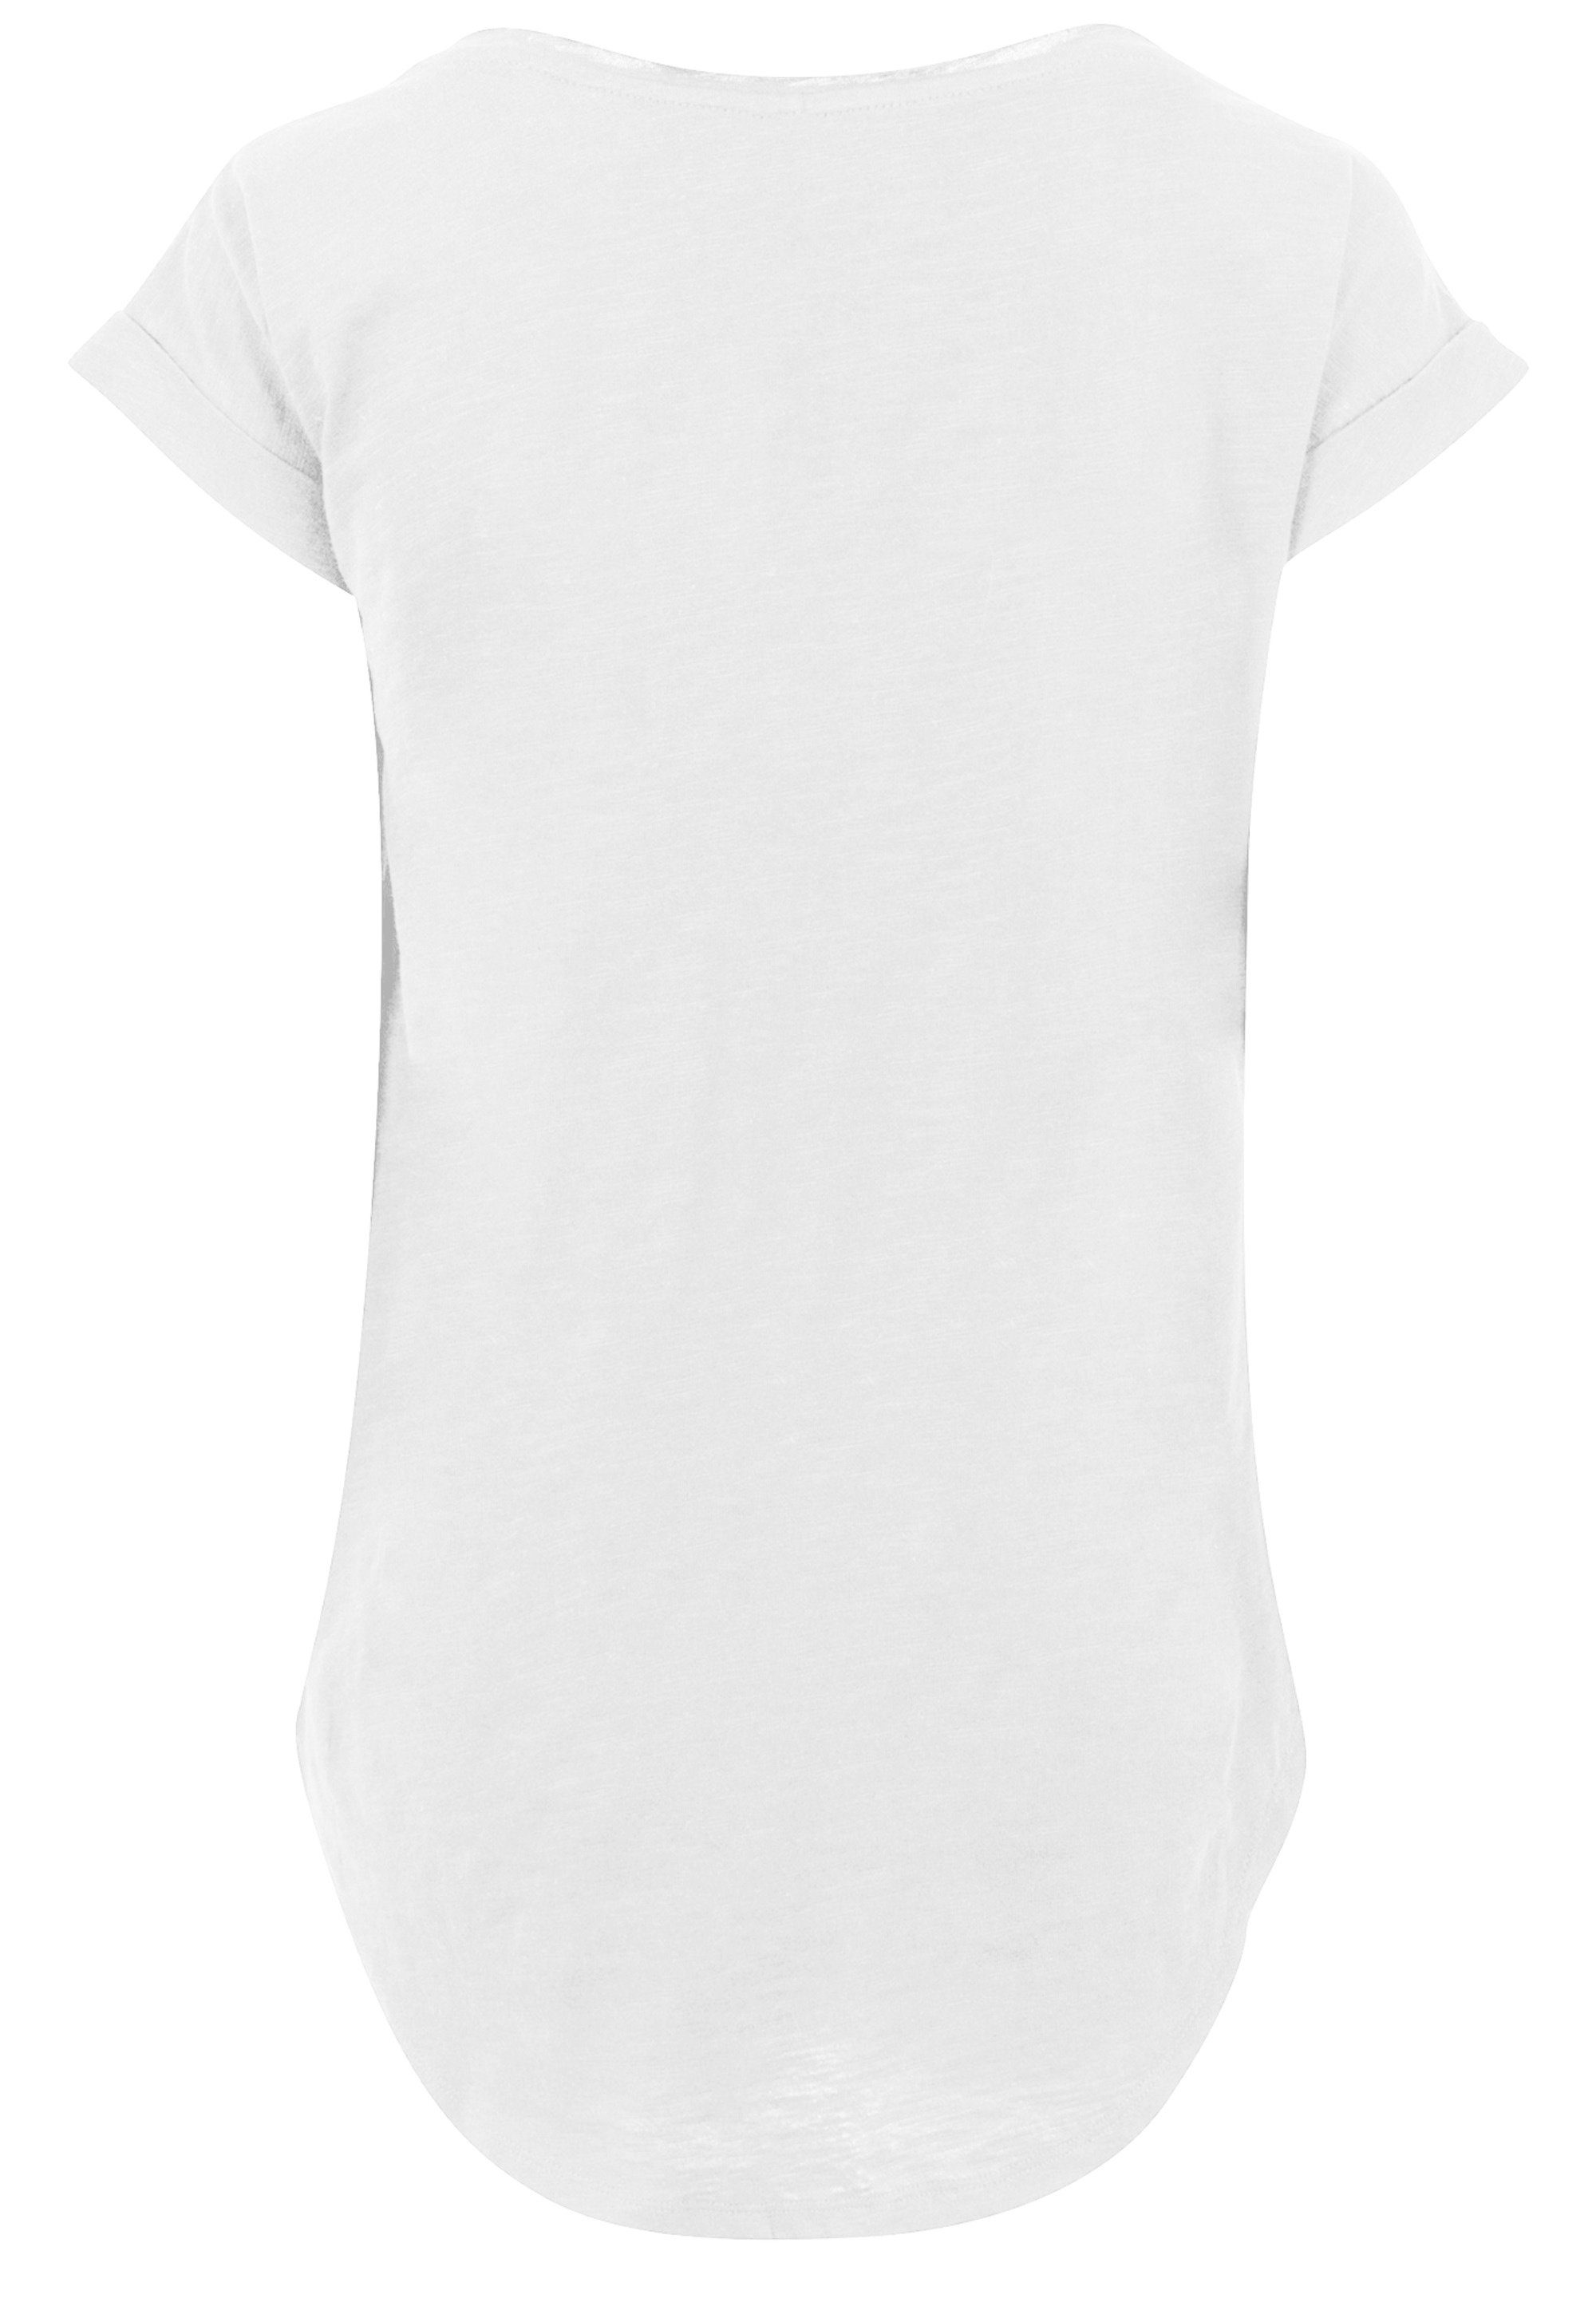 F4NT4STIC T-Shirt FRIENDS Ross & Rachel & Chandler & Monica & Phoebe & Joey  Print, Hinten extra lang geschnittenes Damen T-Shirt | T-Shirts